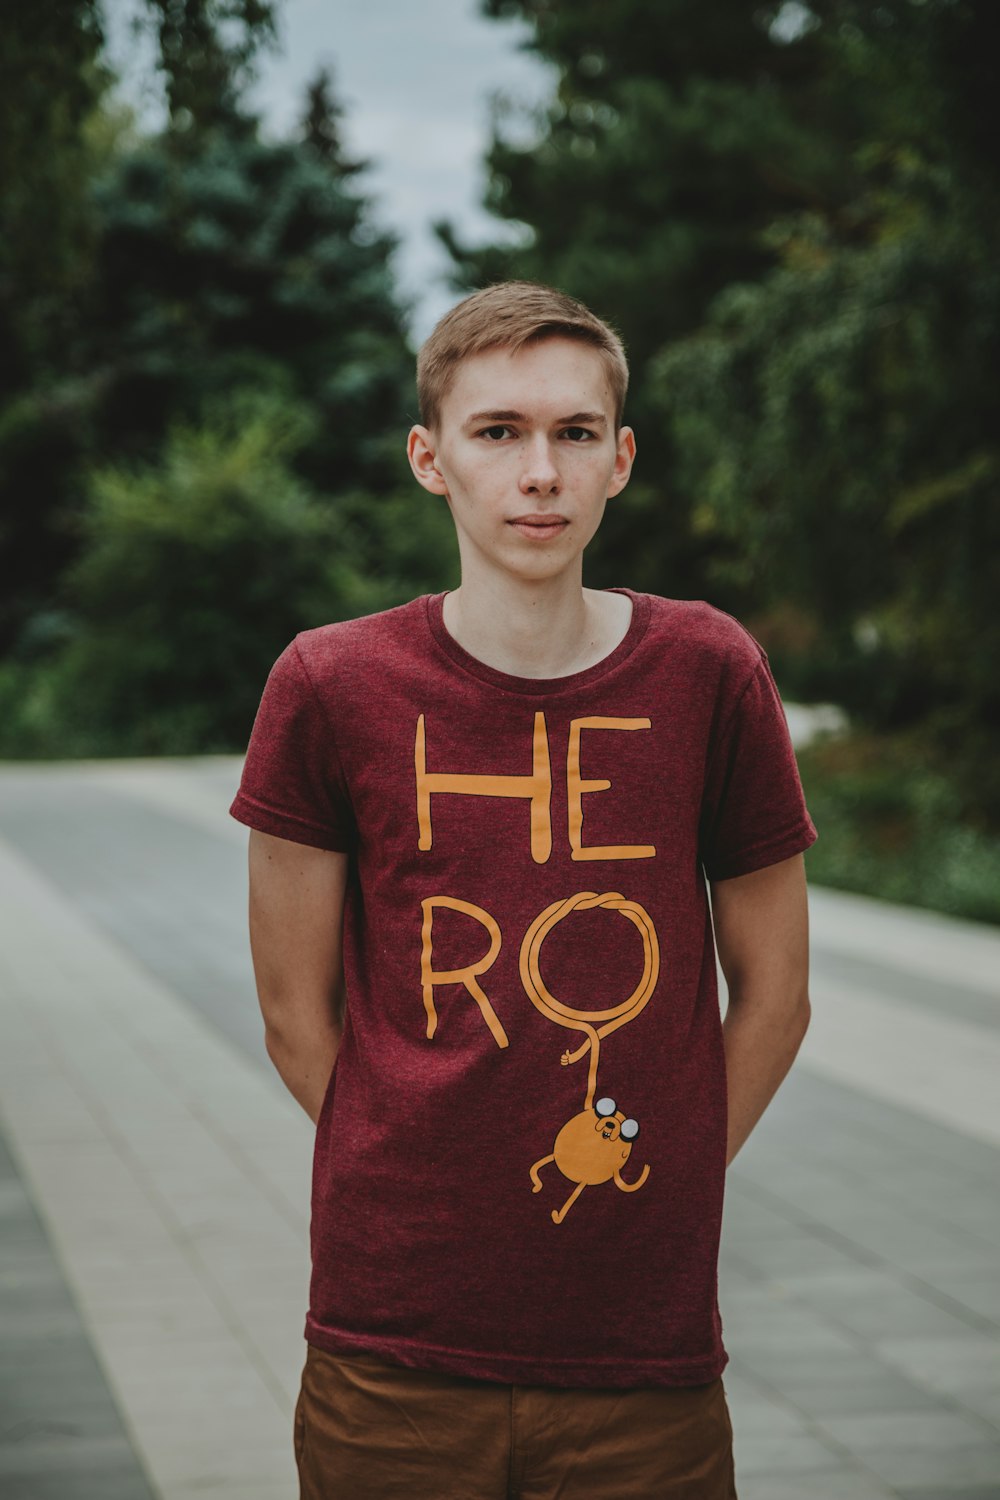 man wearing red hero-printed crew-neck T-shirt